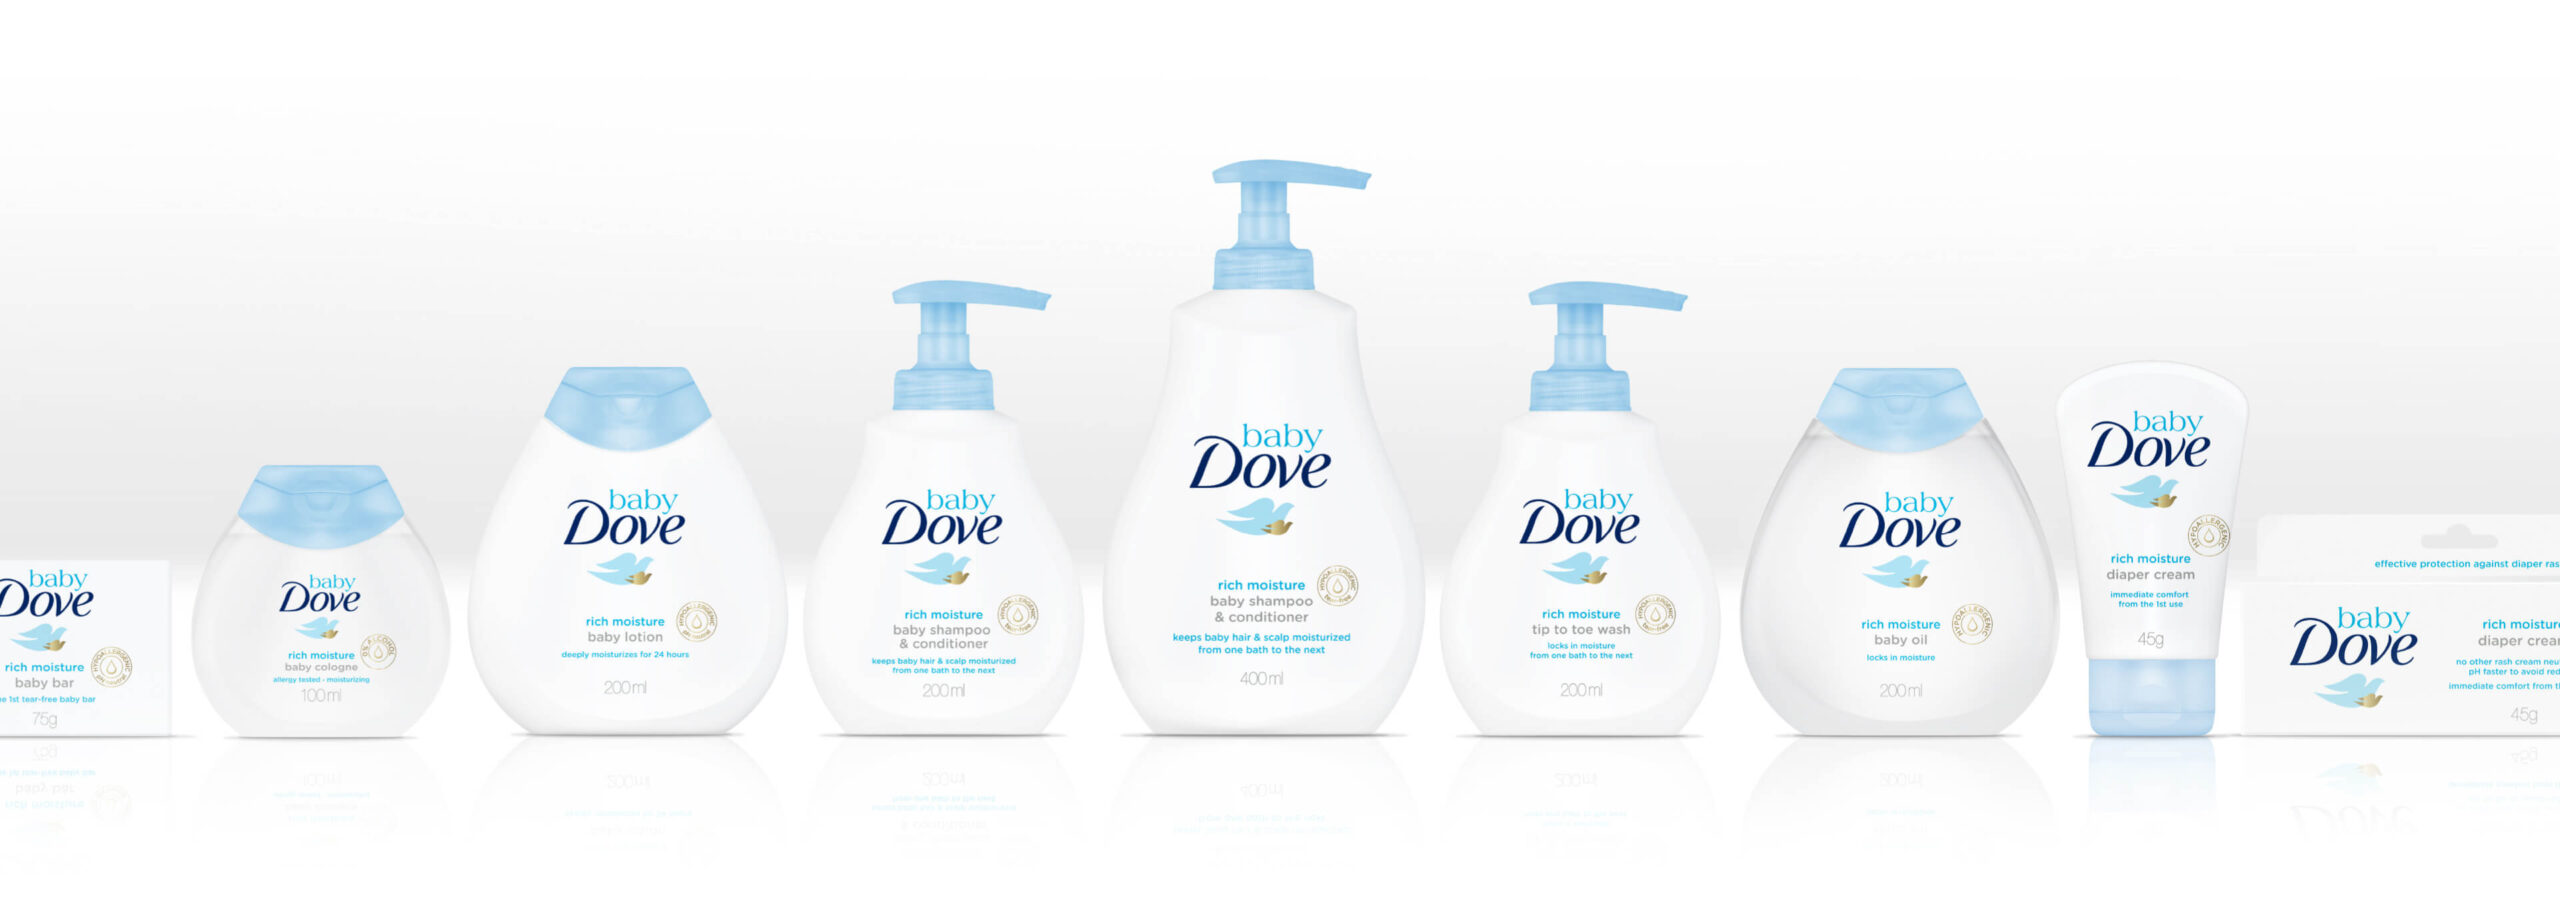 Dove Baby Product Range Design